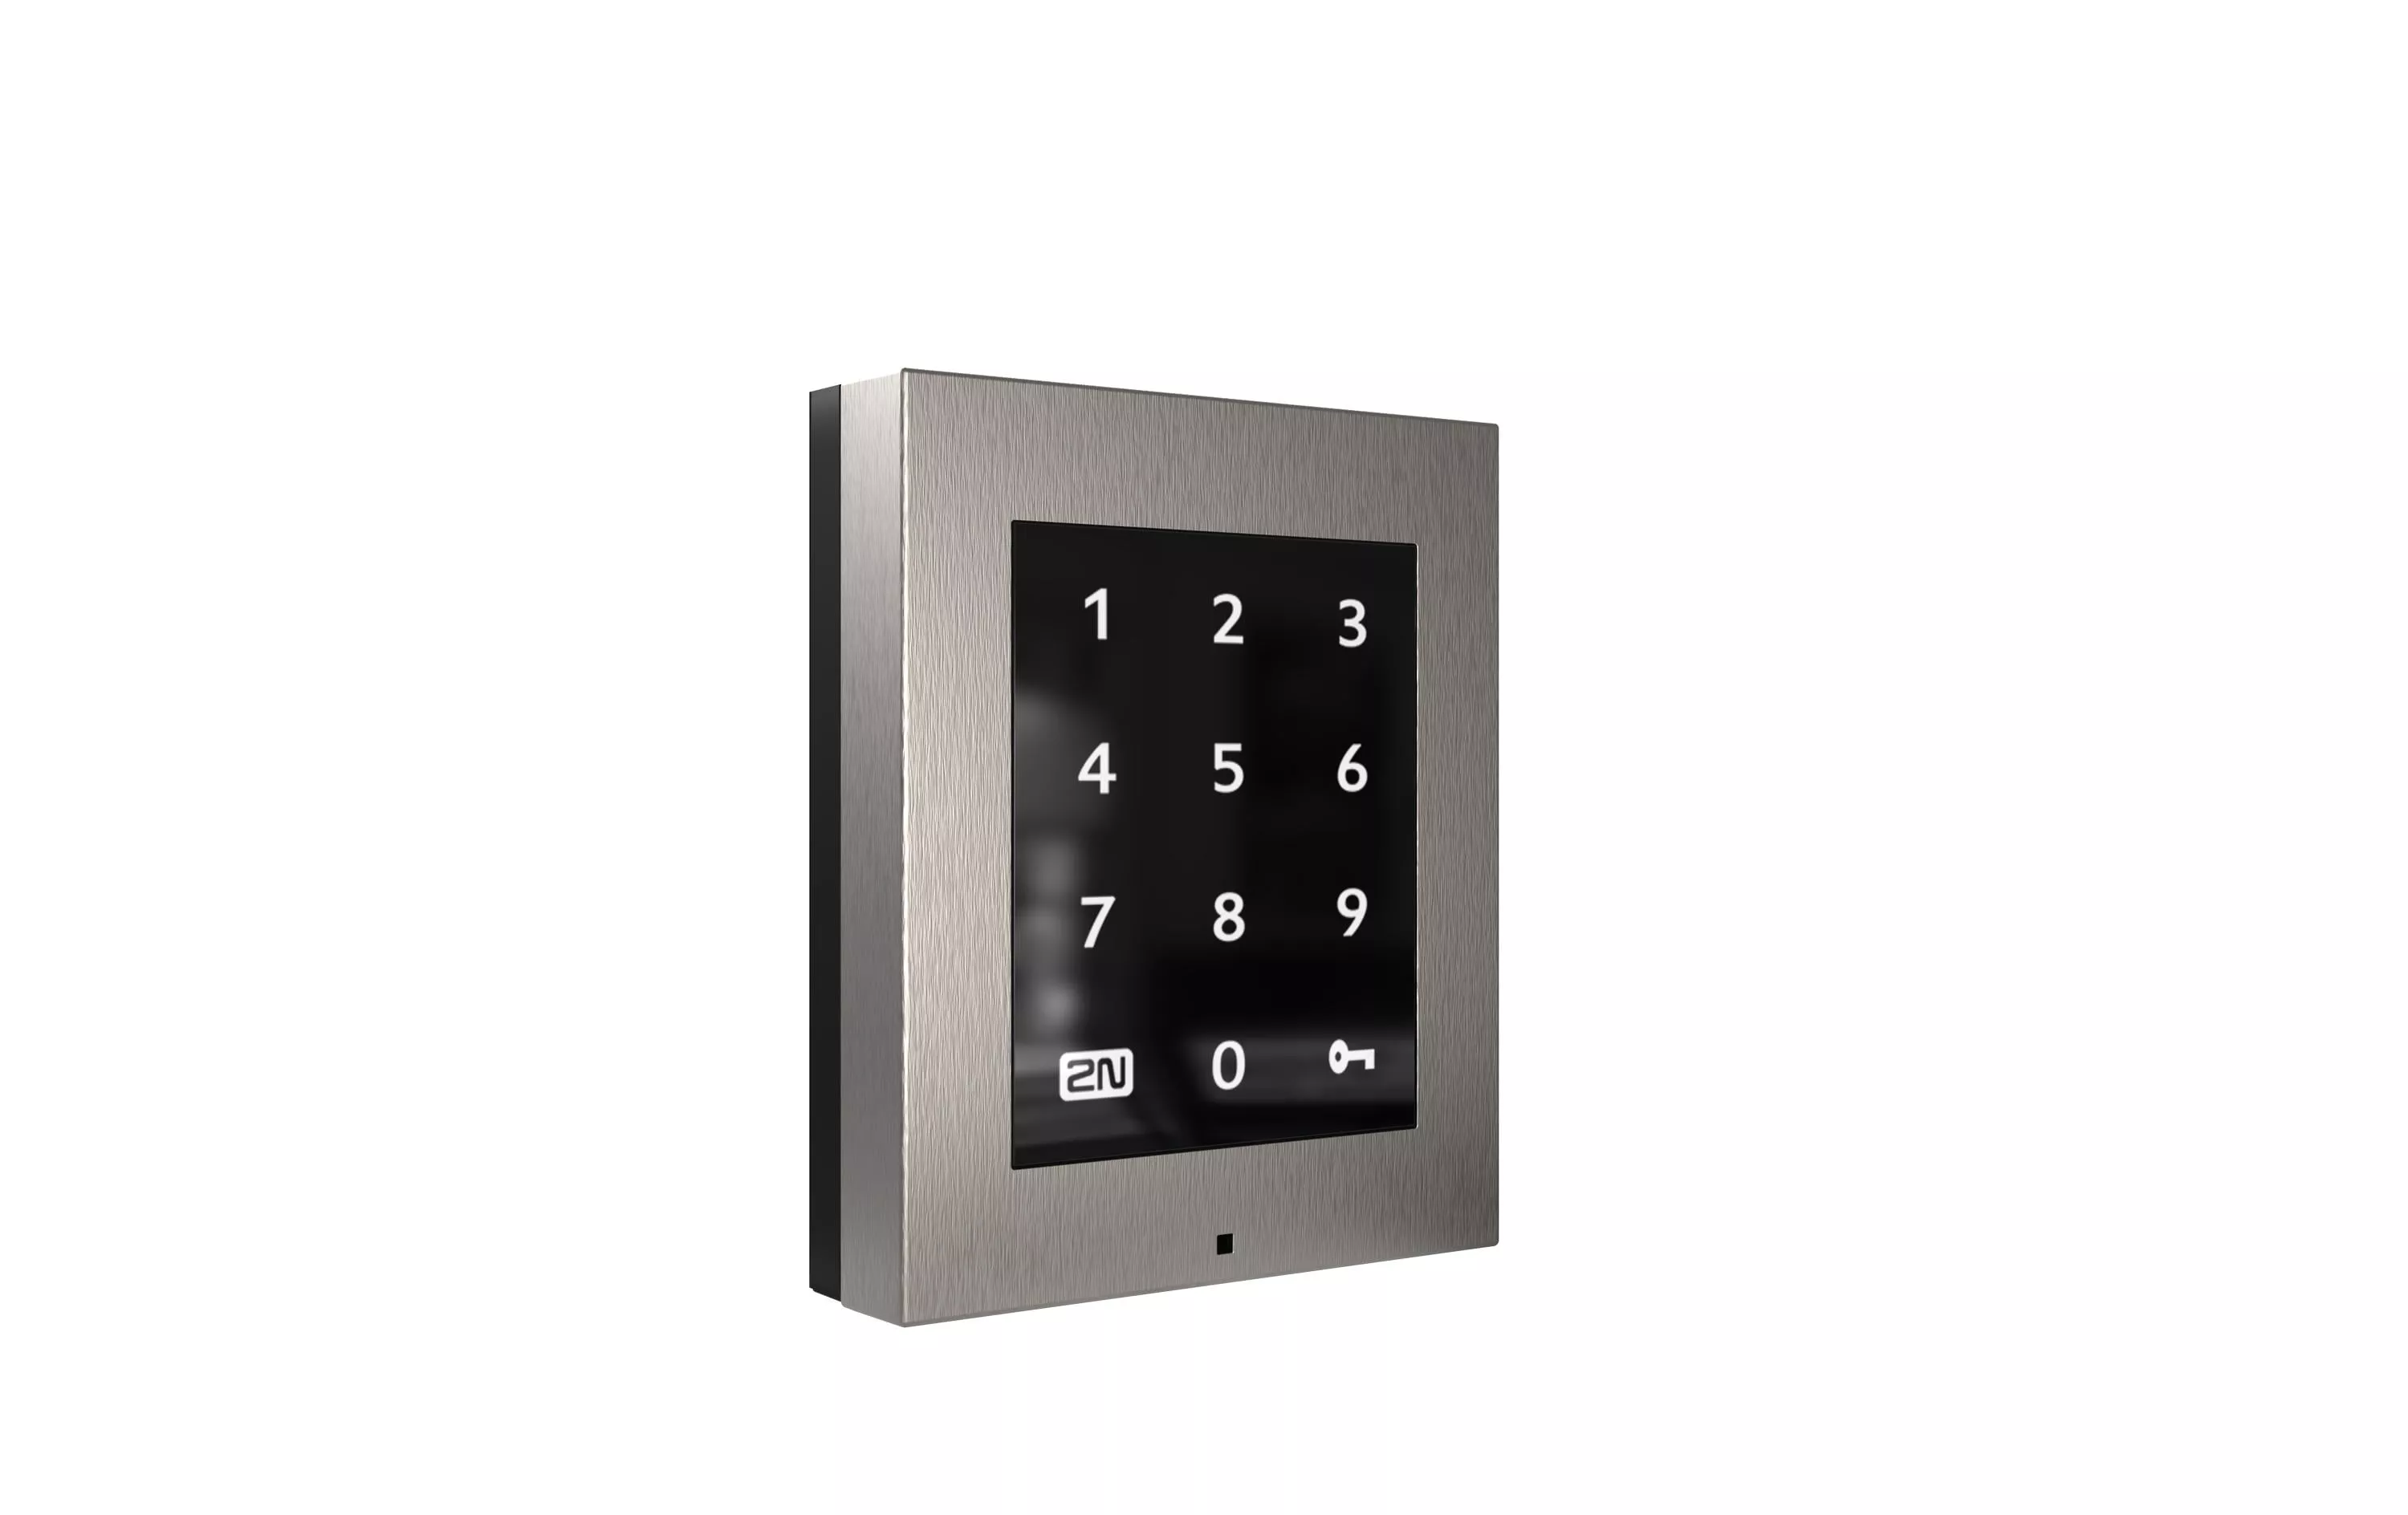 Nummernblock Access Unit 2.0 Touch Keypad ohne Rahmen